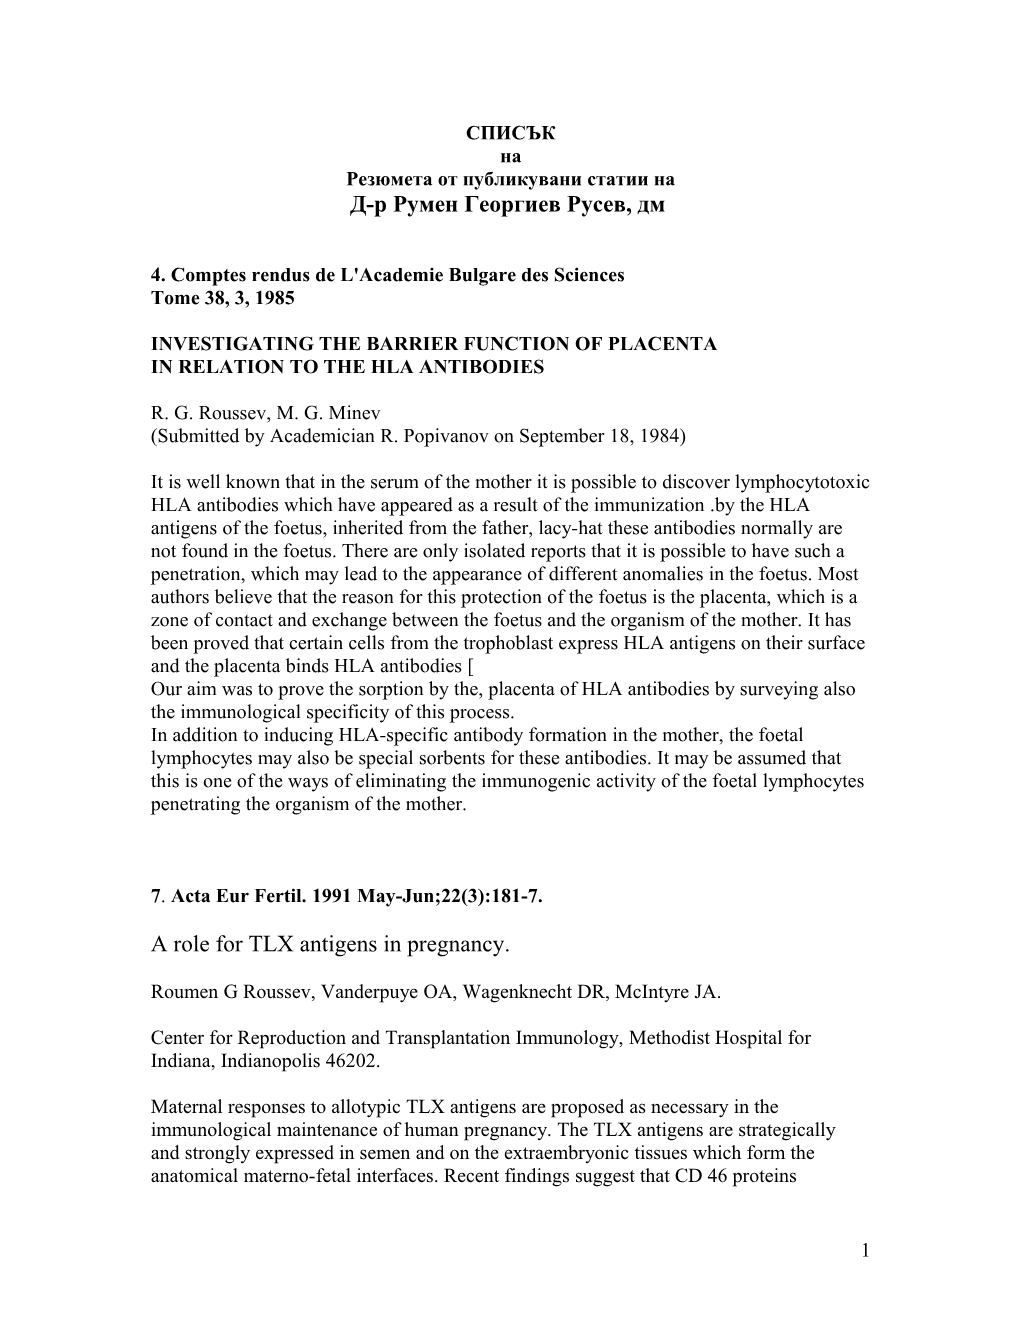 4. Comptes Rendus De L'academie Bulgare Des Sciences